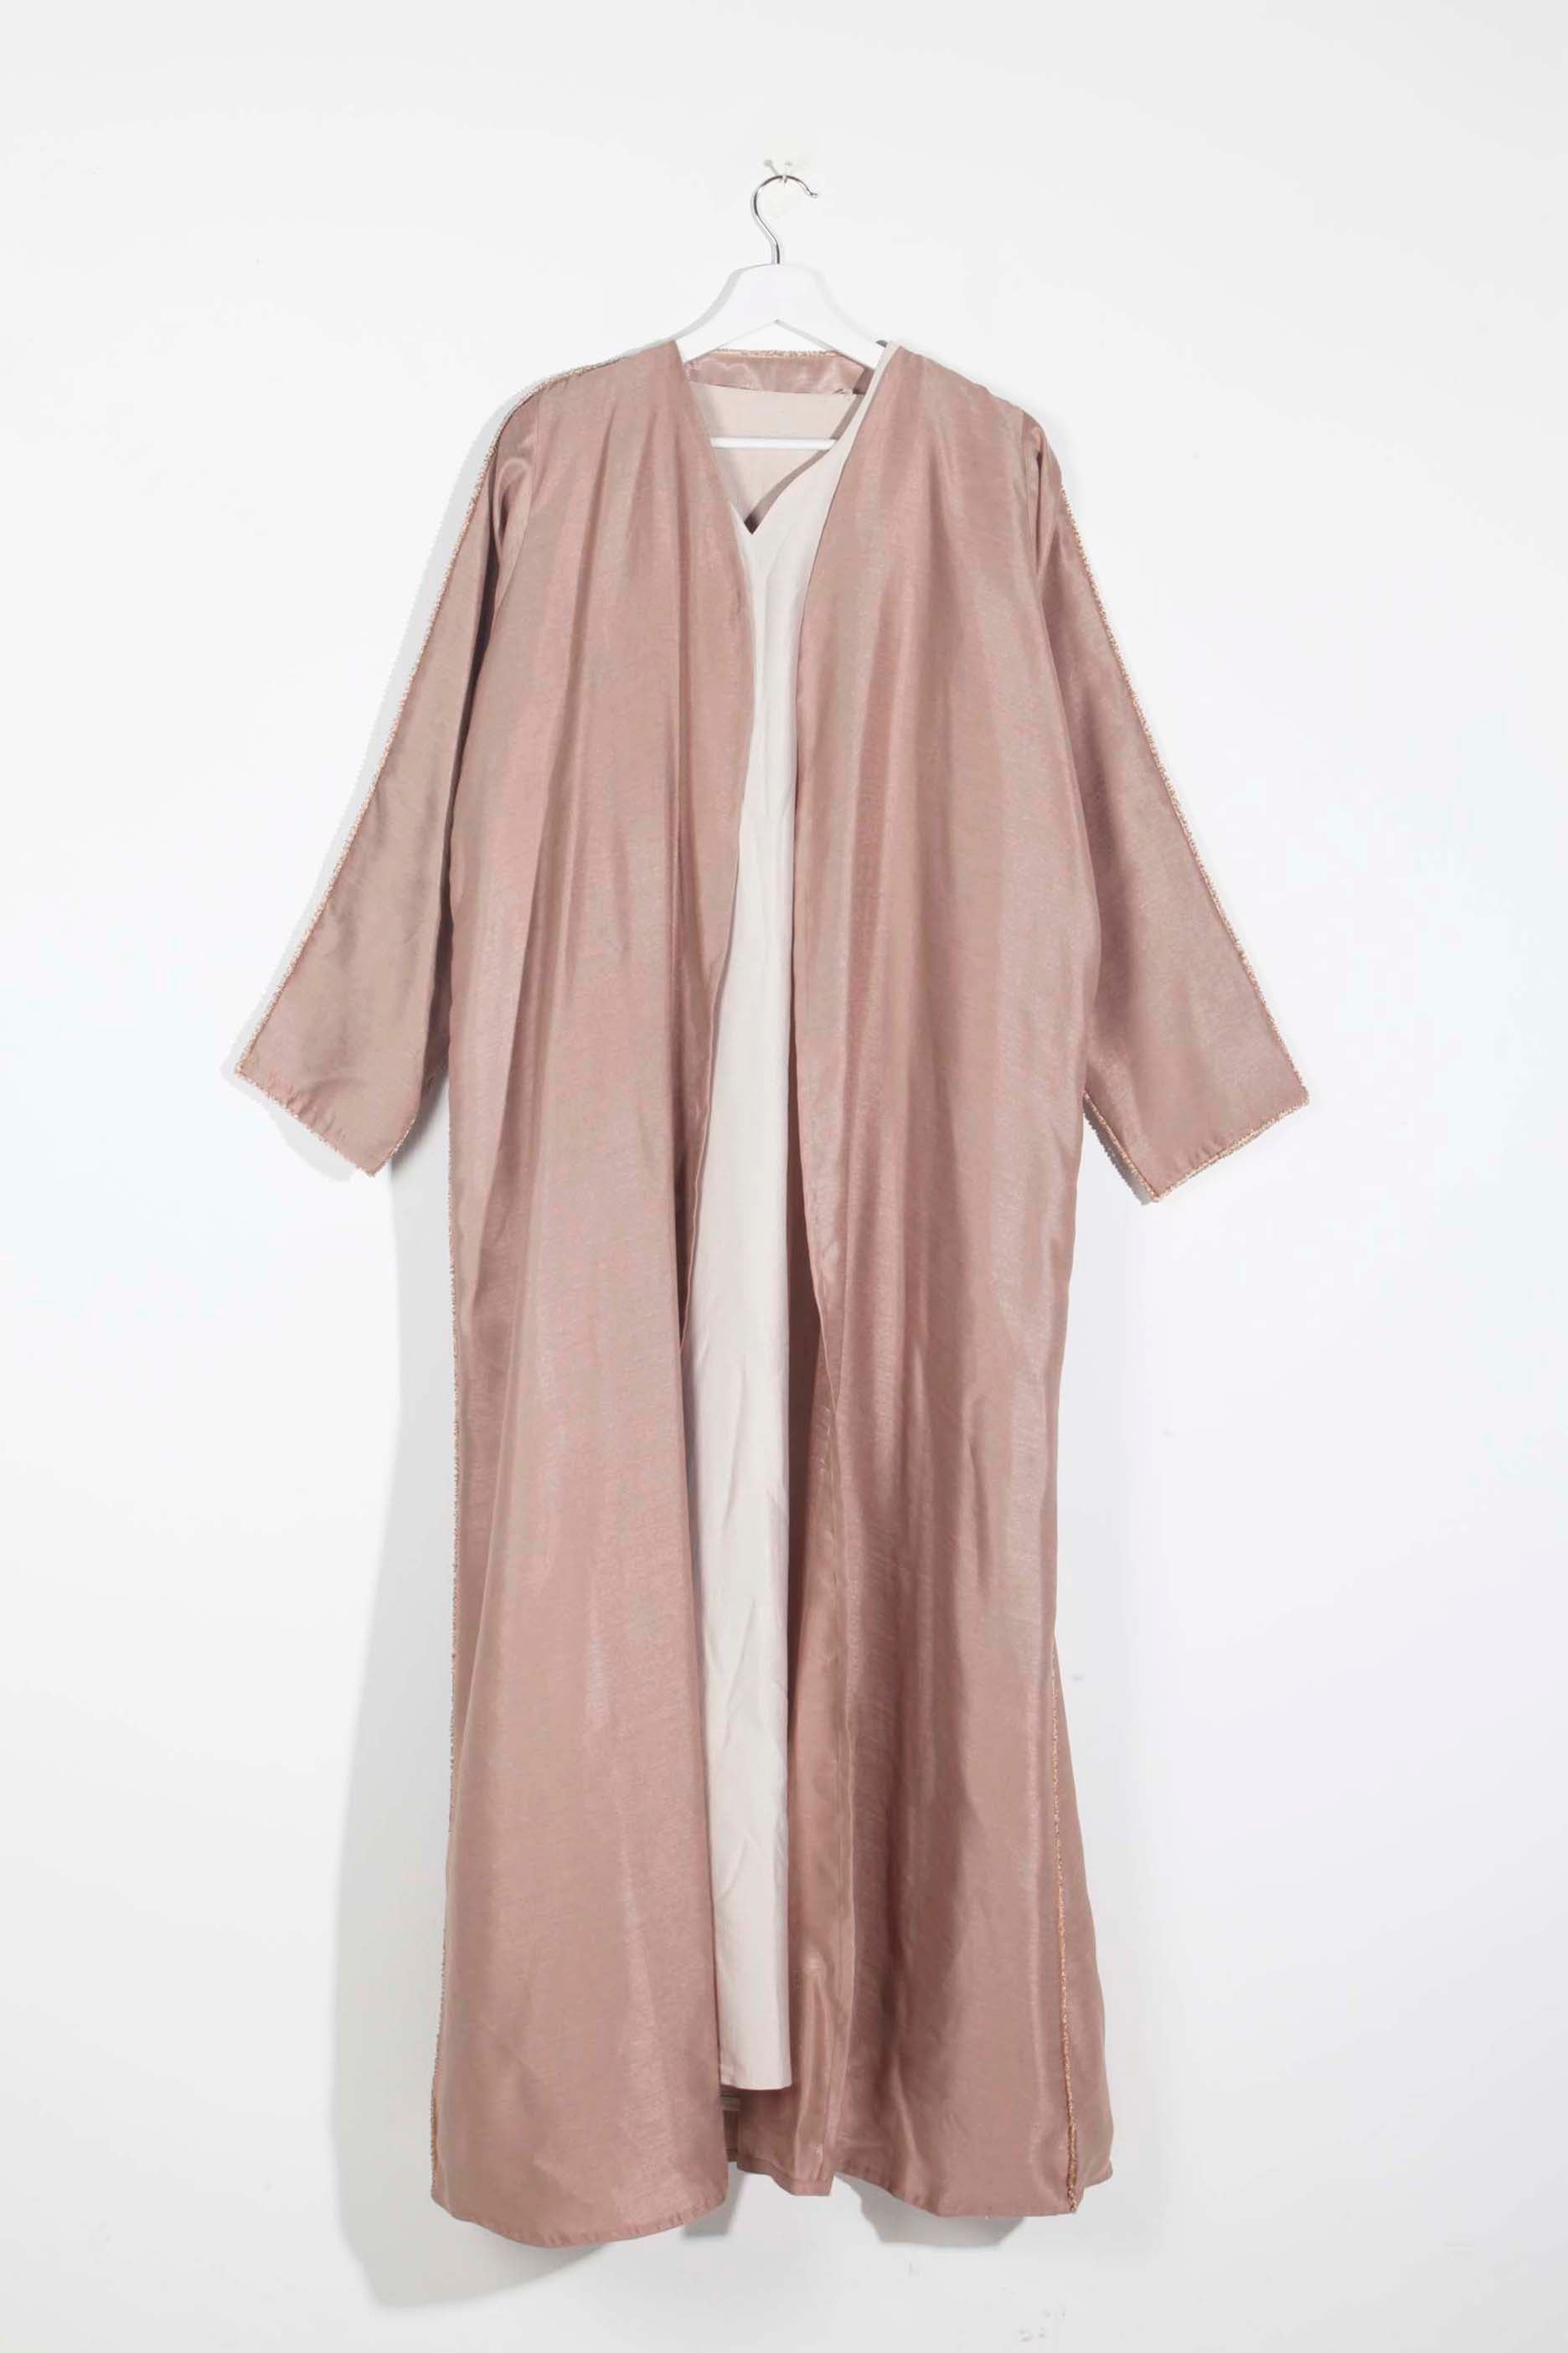 Luxury beige abaya with beading detail